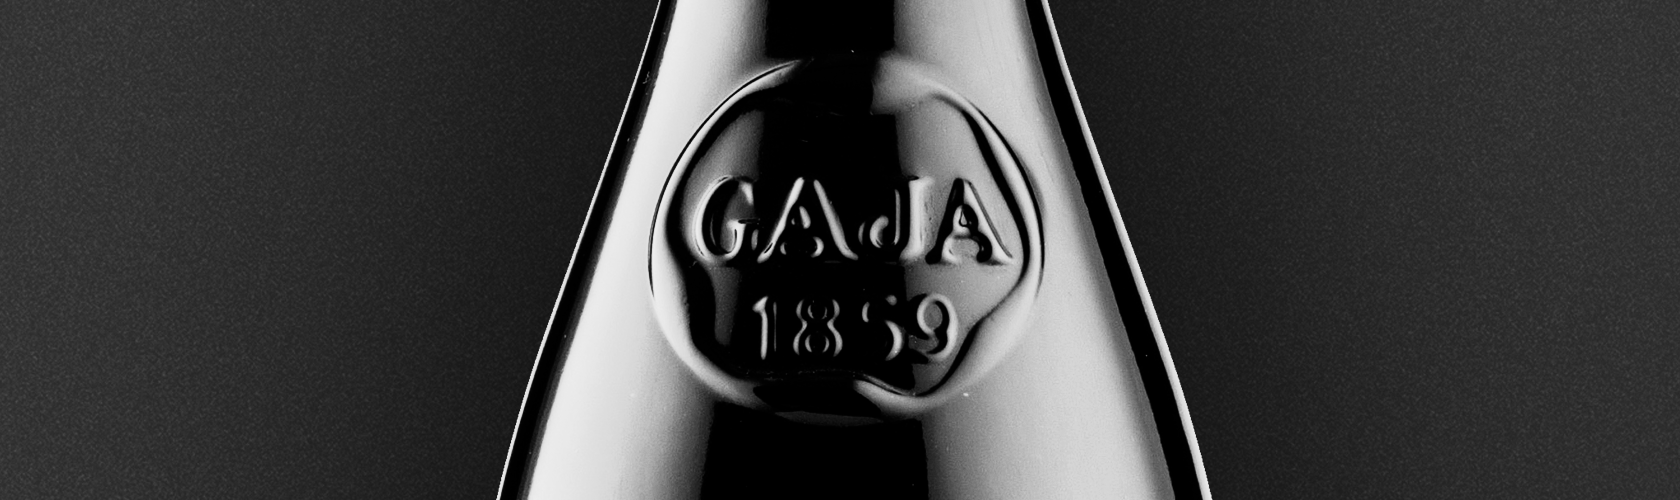 O 60º “tre bicchieri” de Gaja, o único produtor com as seis estrelas do Gambero Rosso